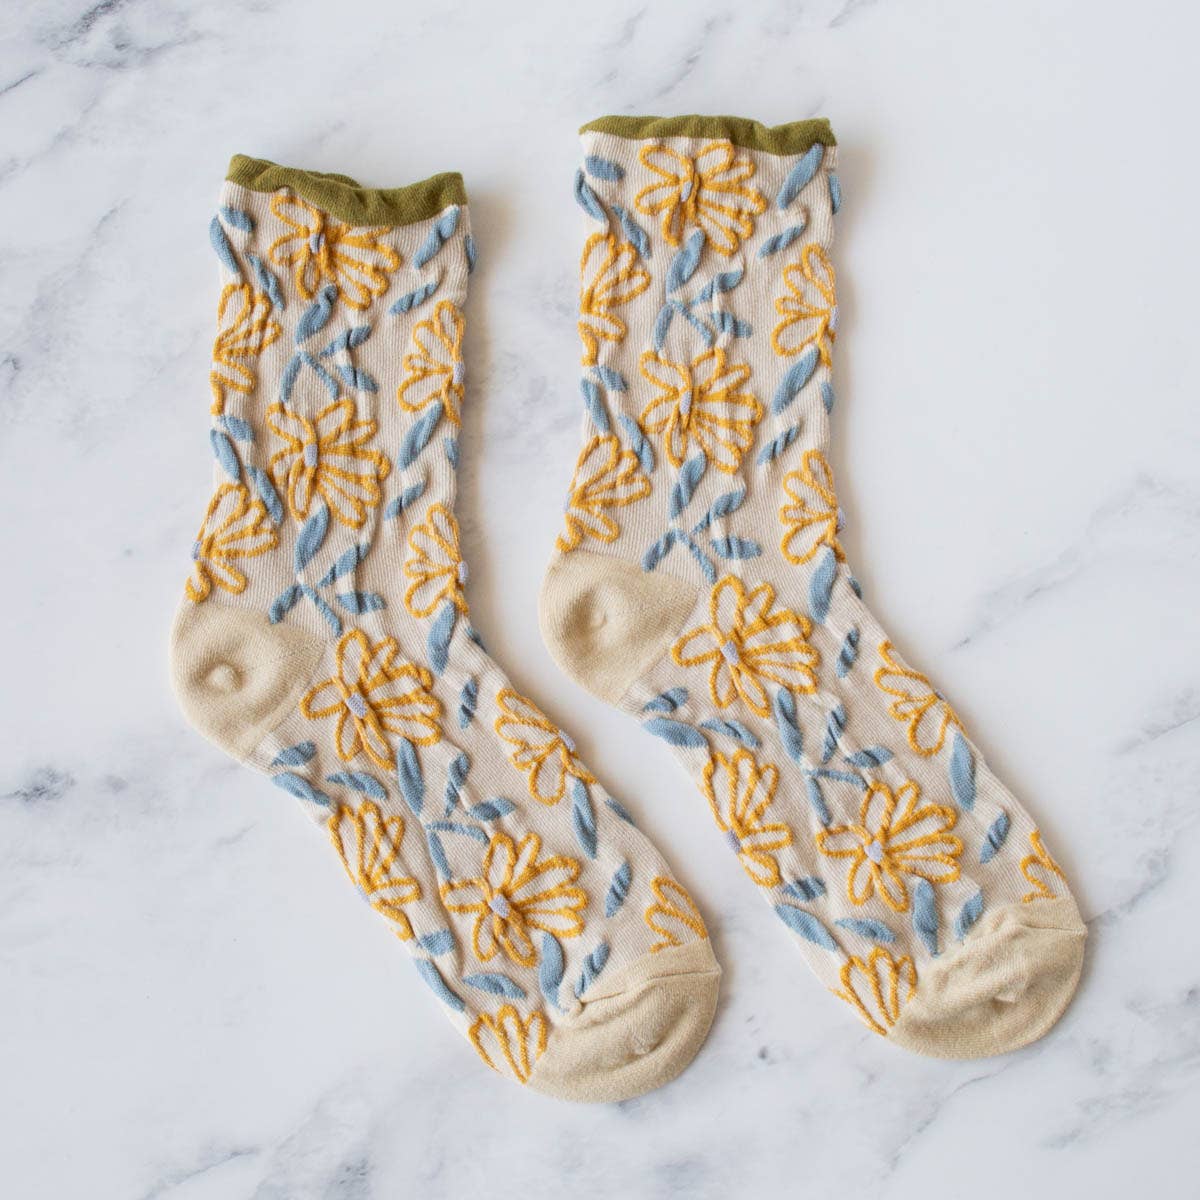 Unique Vintage Floral Socks: Olive/Beige